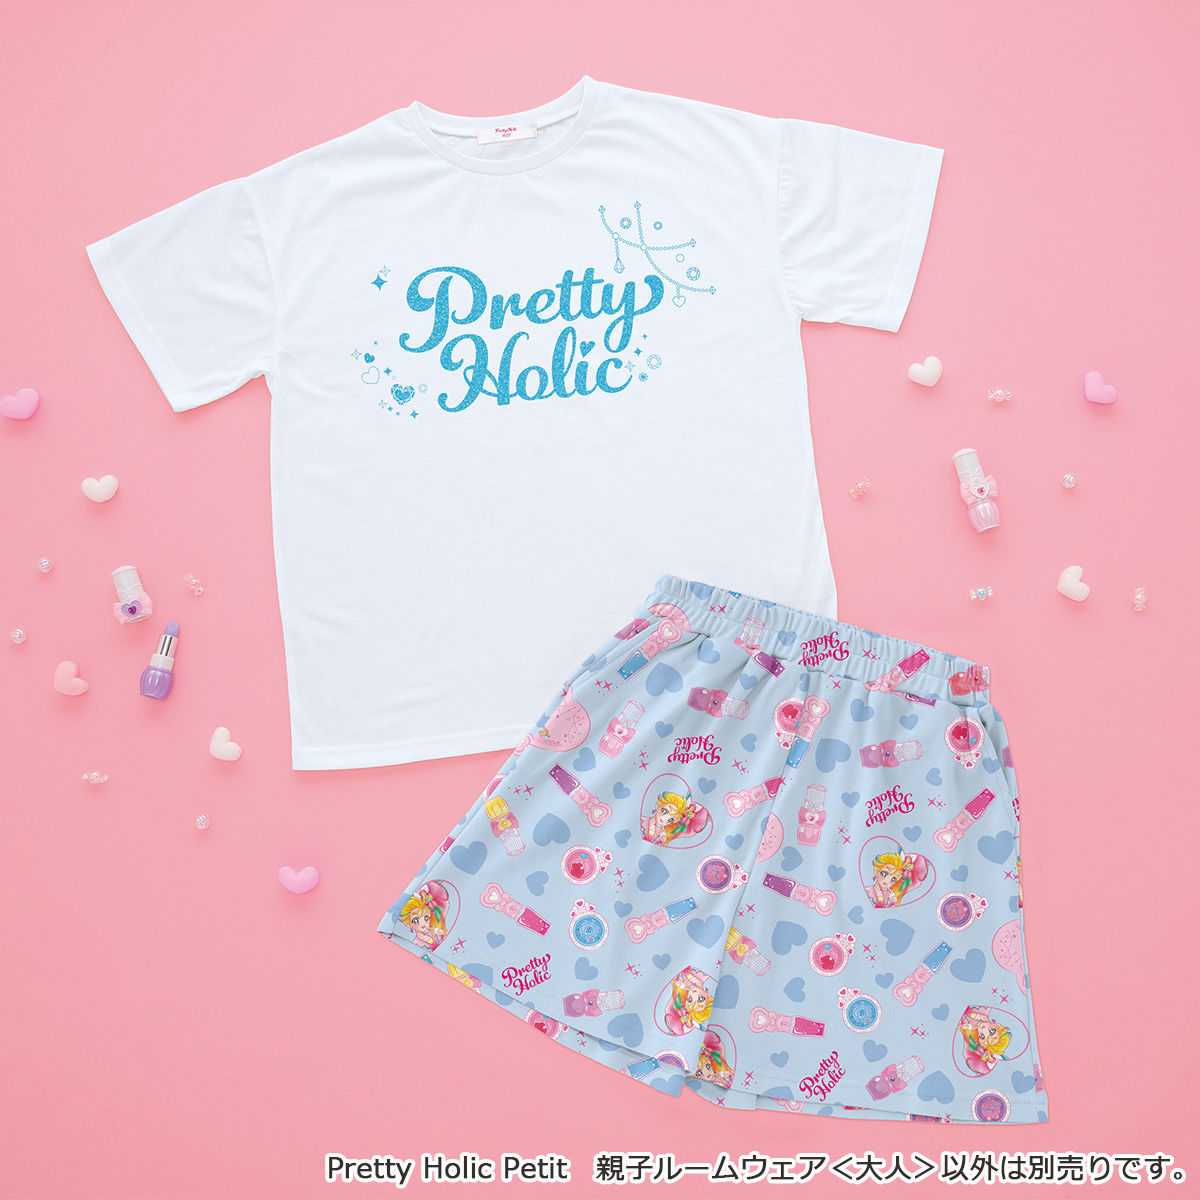 Pretty Holic Petit 親子ルームウェア 大人 トロピカル ジュ プリキュア ファッション アクセサリー バンダイナムコグループ公式通販サイト